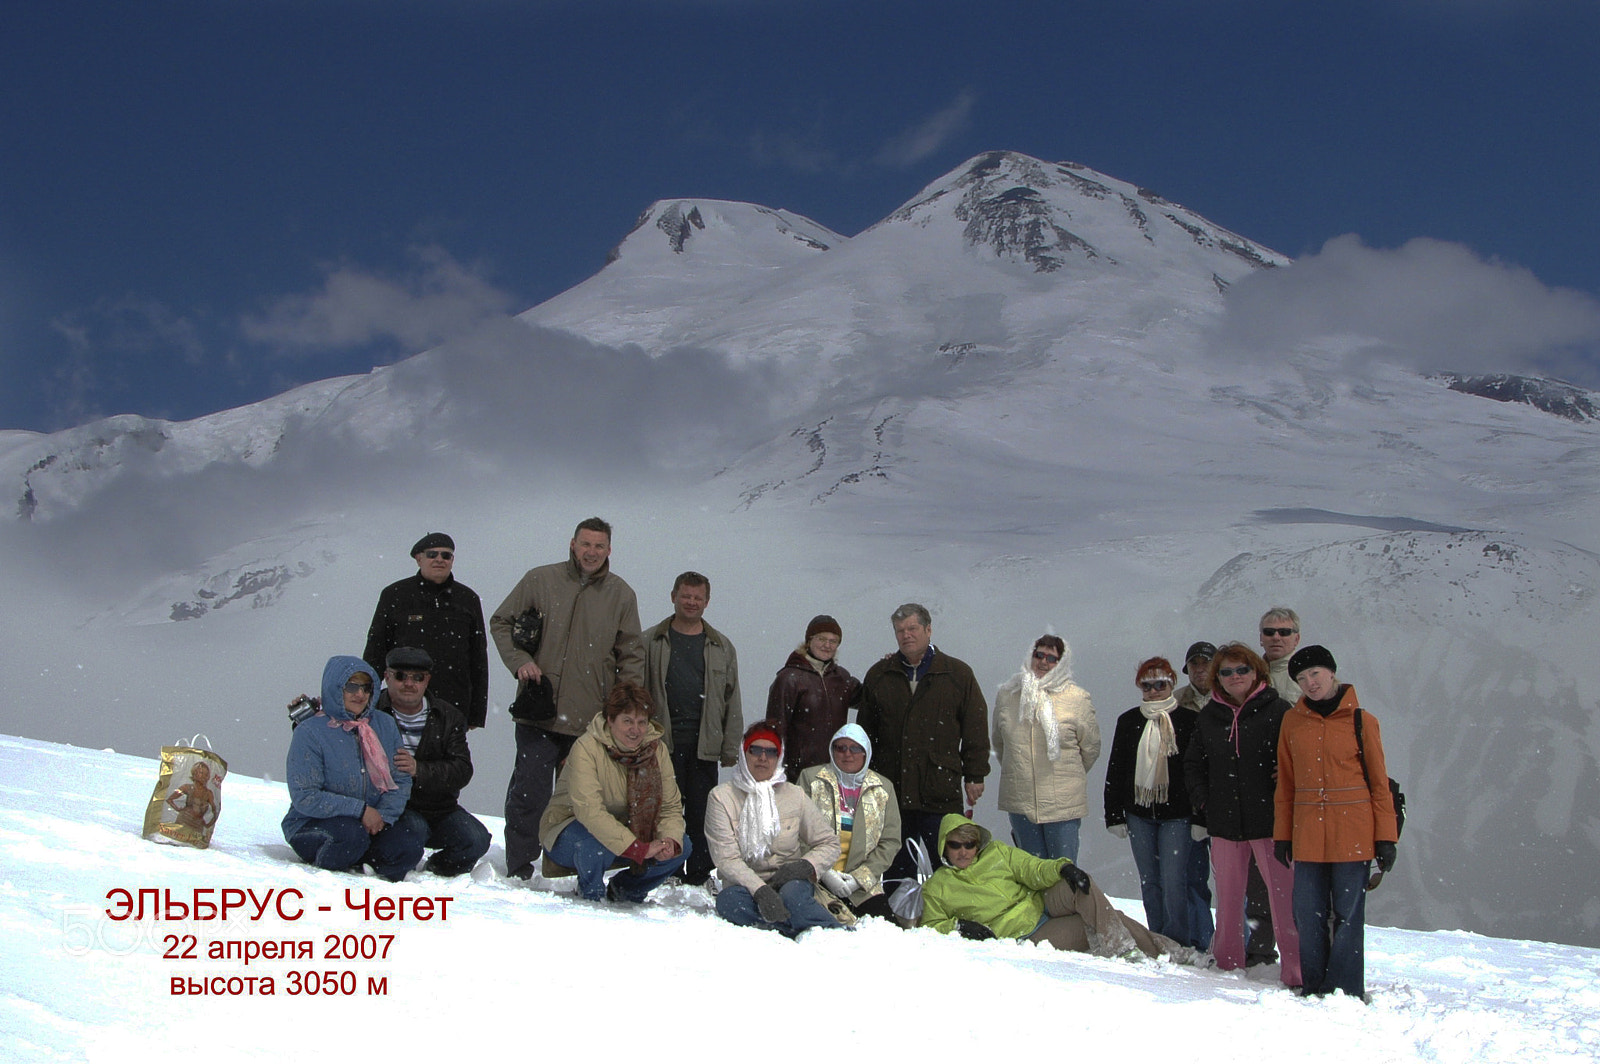 Nikon D70 + AF-S Zoom-Nikkor 24-85mm f/3.5-4.5G IF-ED sample photo. Caucasus. elbrus. cheget. april 22, 2007. photography